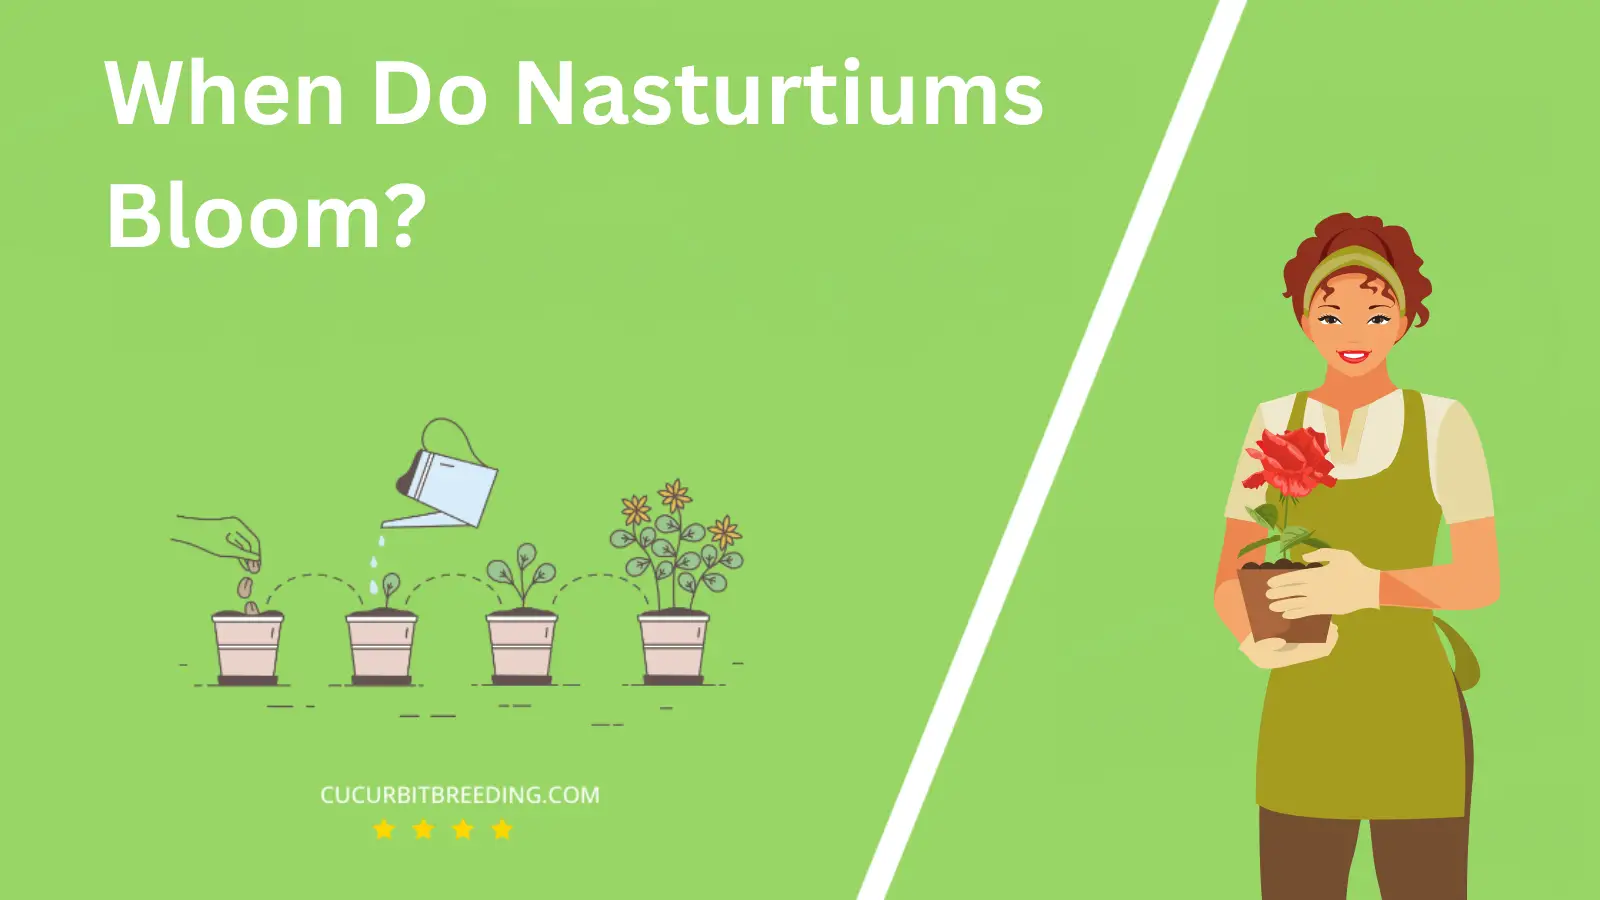 When Do Nasturtiums Bloom?